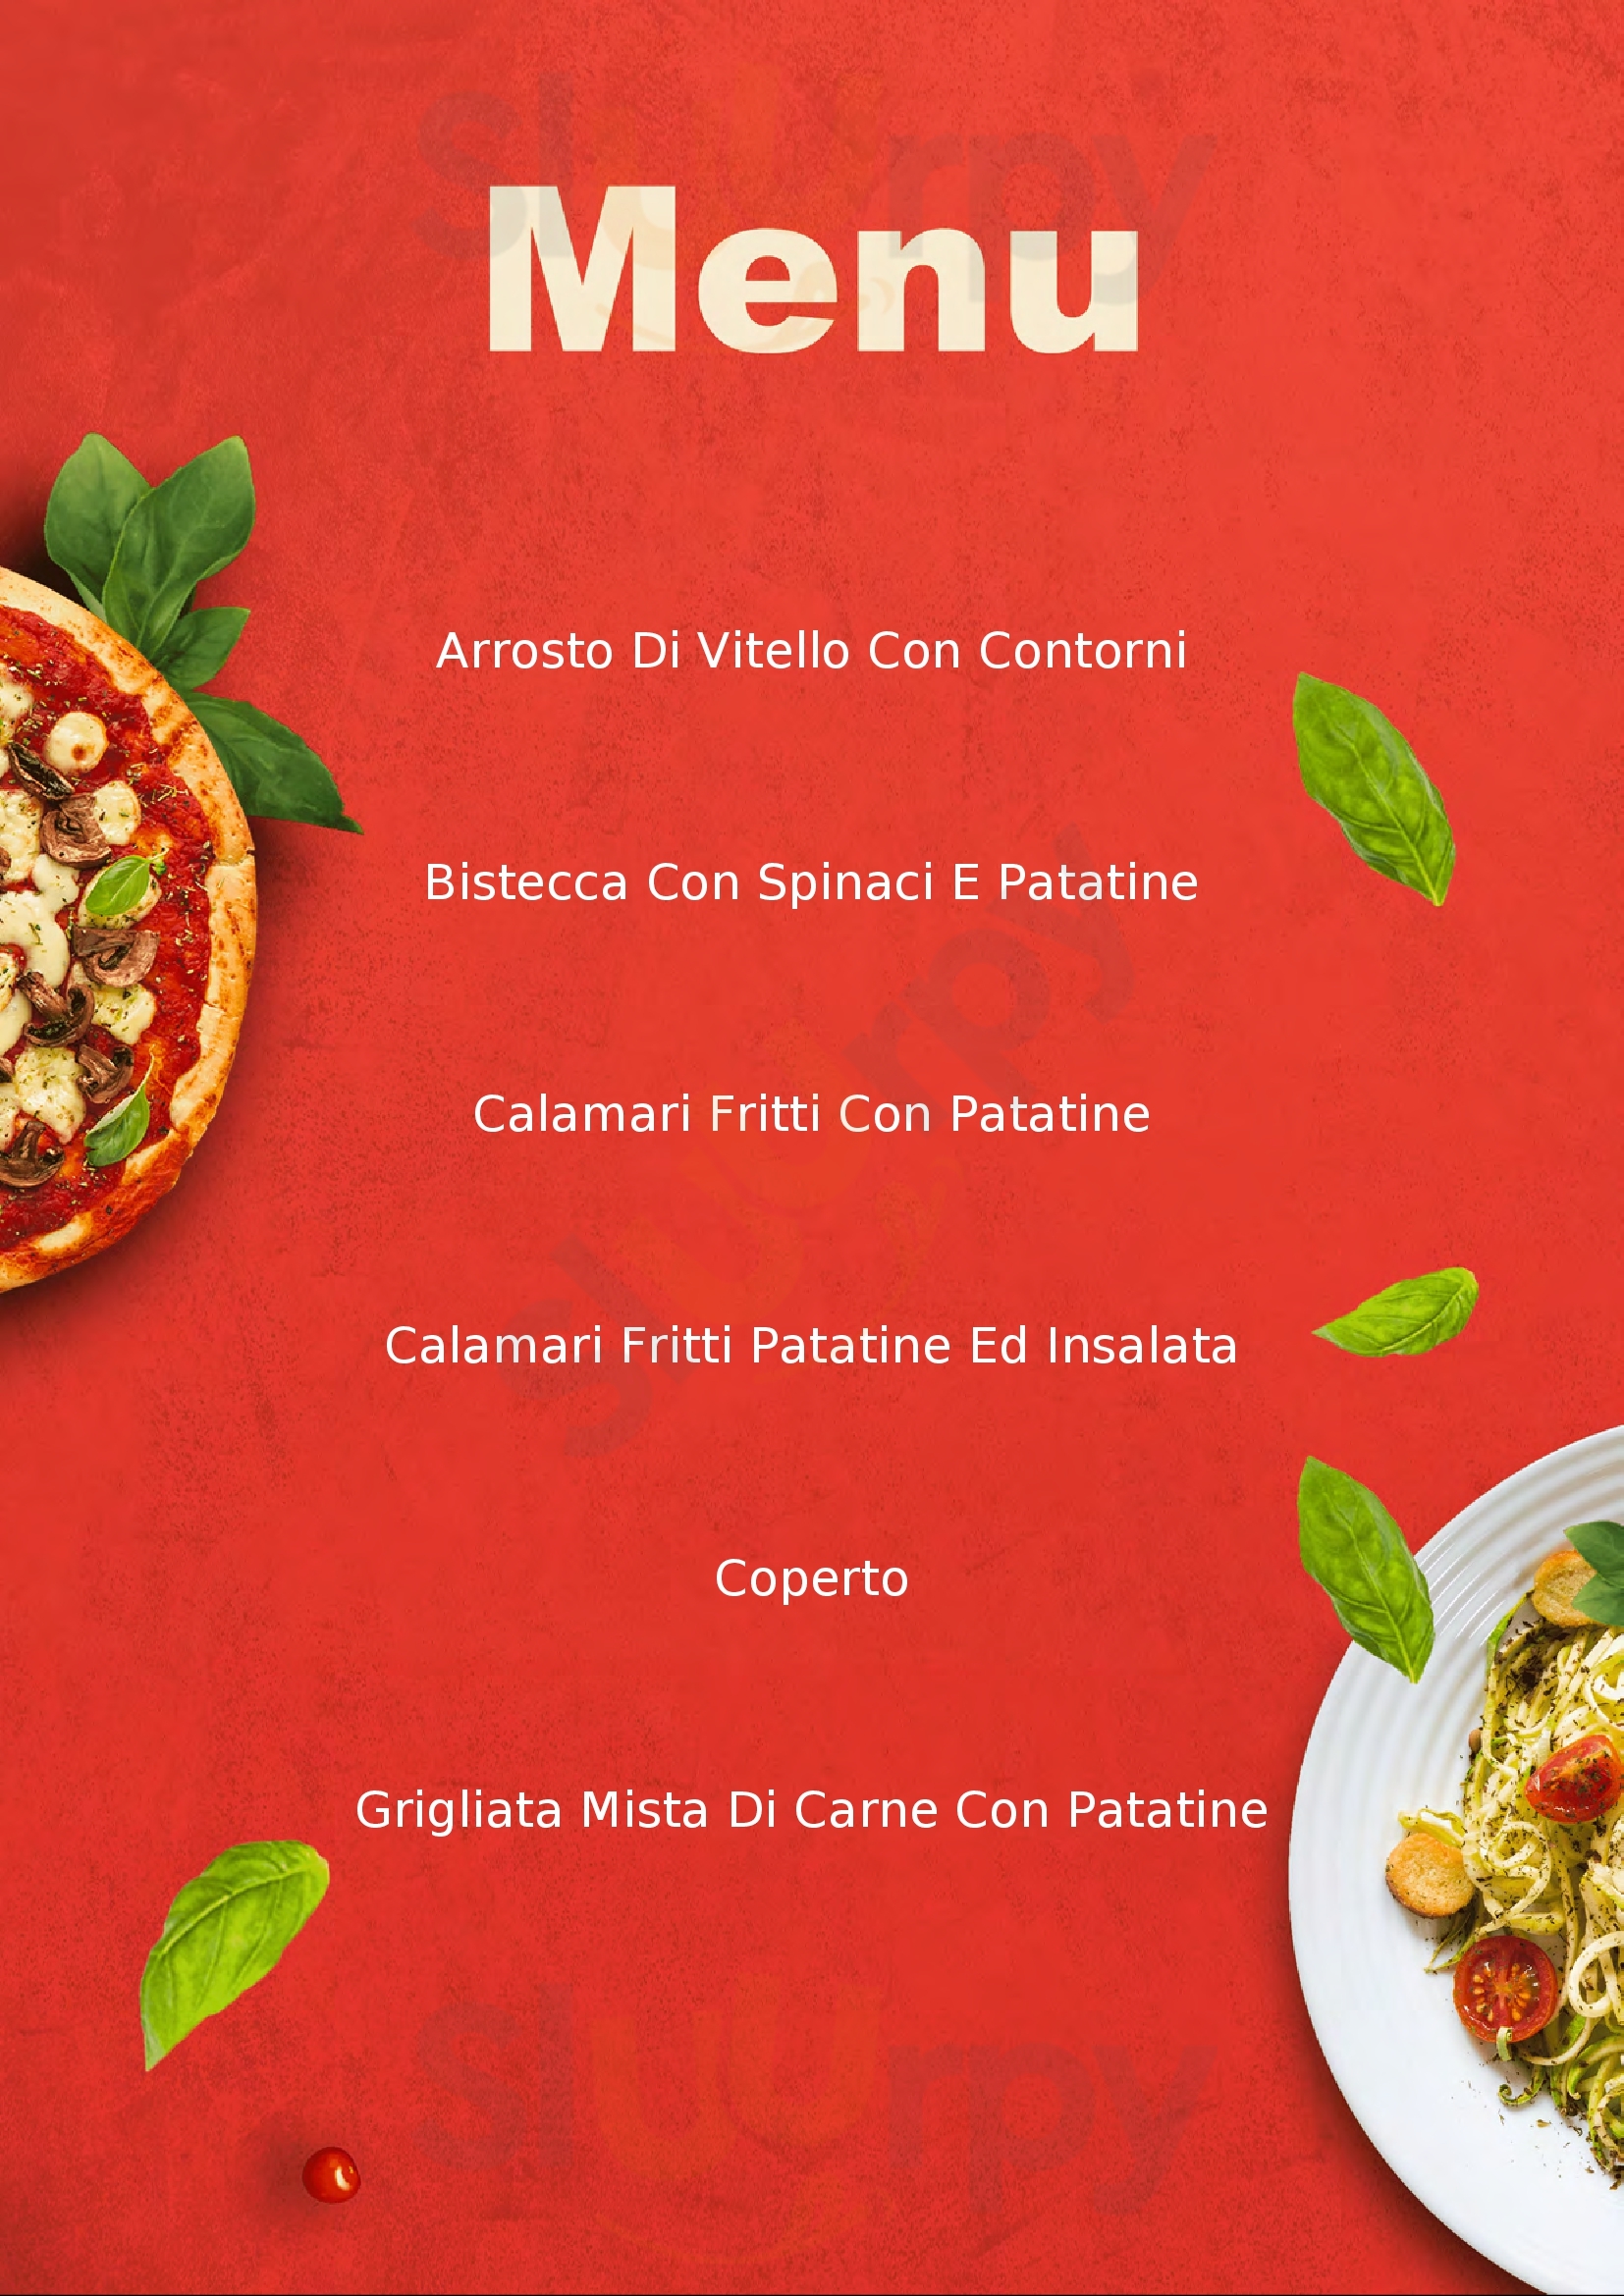 Il Girasole Pizzeria Bar Trattoria Verres menù 1 pagina